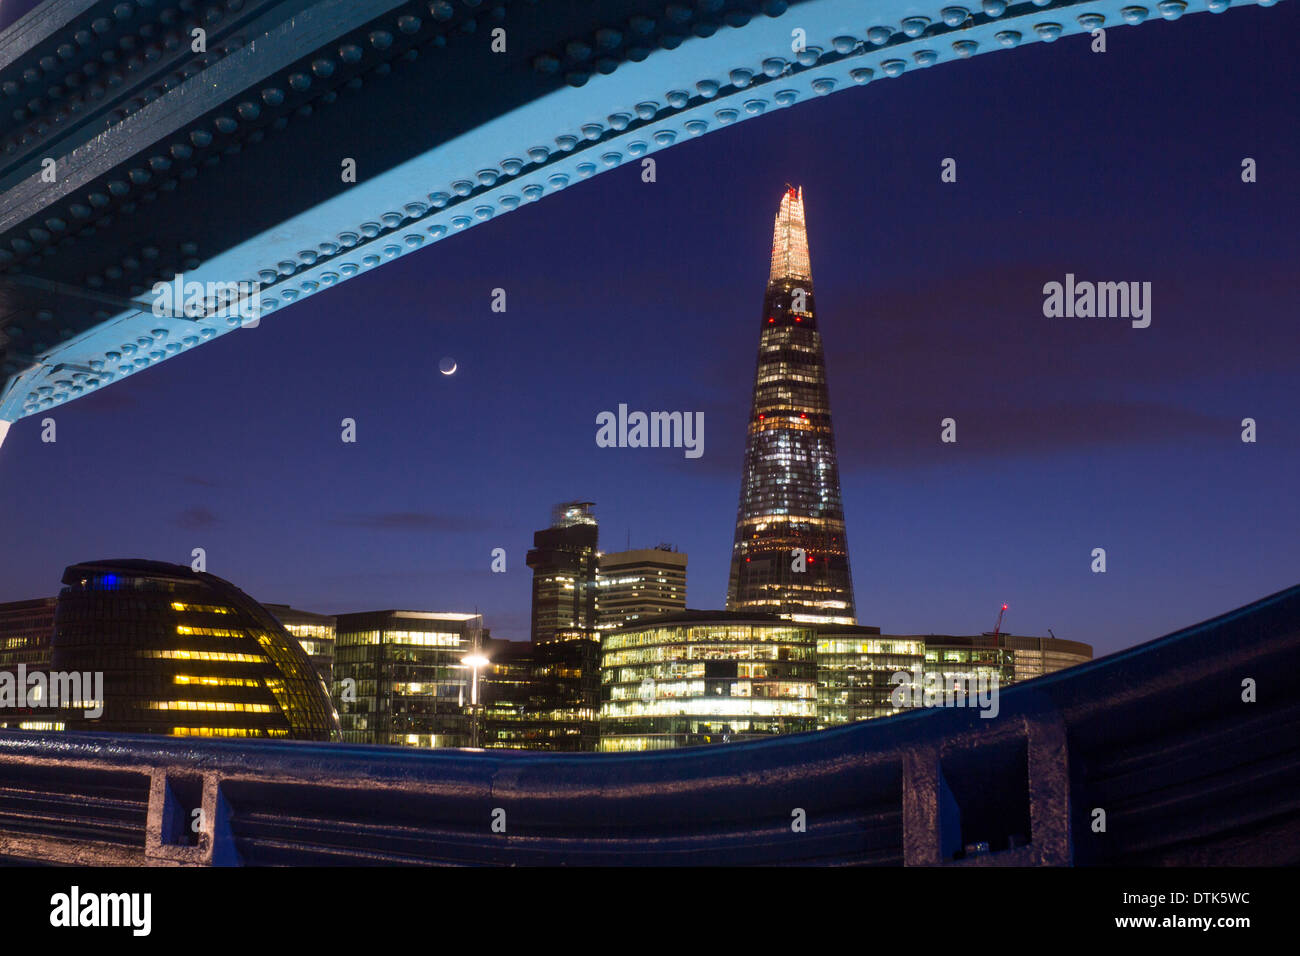 Der Shard, Rathaus und mehr London Bürogebäude von der Tower Bridge bei Nacht Dämmerung Abenddämmerung Sonnenuntergang London England UK Stockfoto